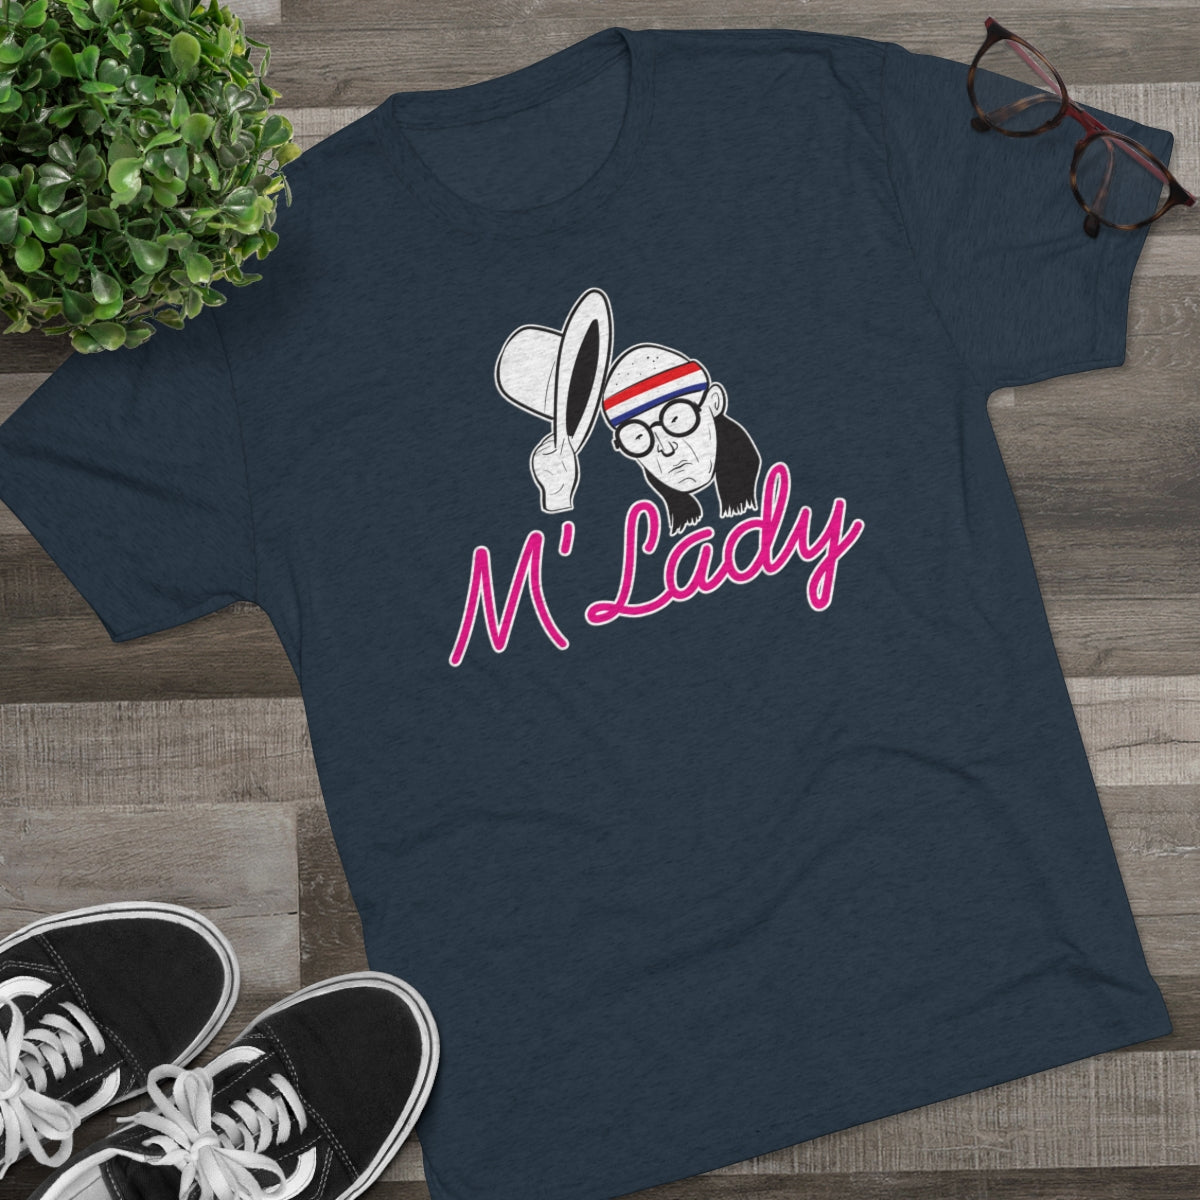 M'Lady Men's Tri-Blend Athletic Fit Shirt